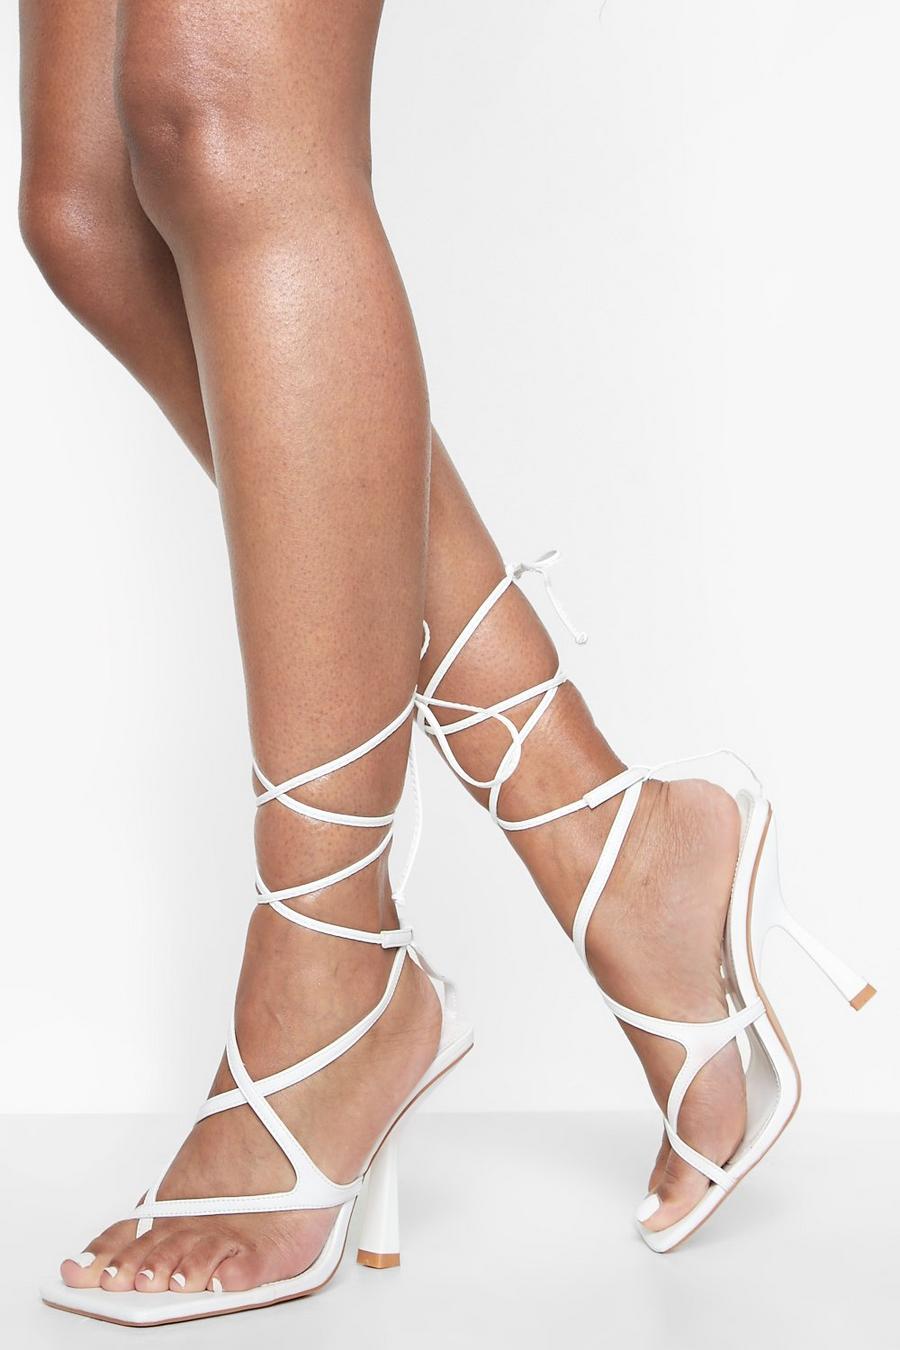 Scarpe a punta quadrata con laccetti alla caviglia e tacco, White blanco